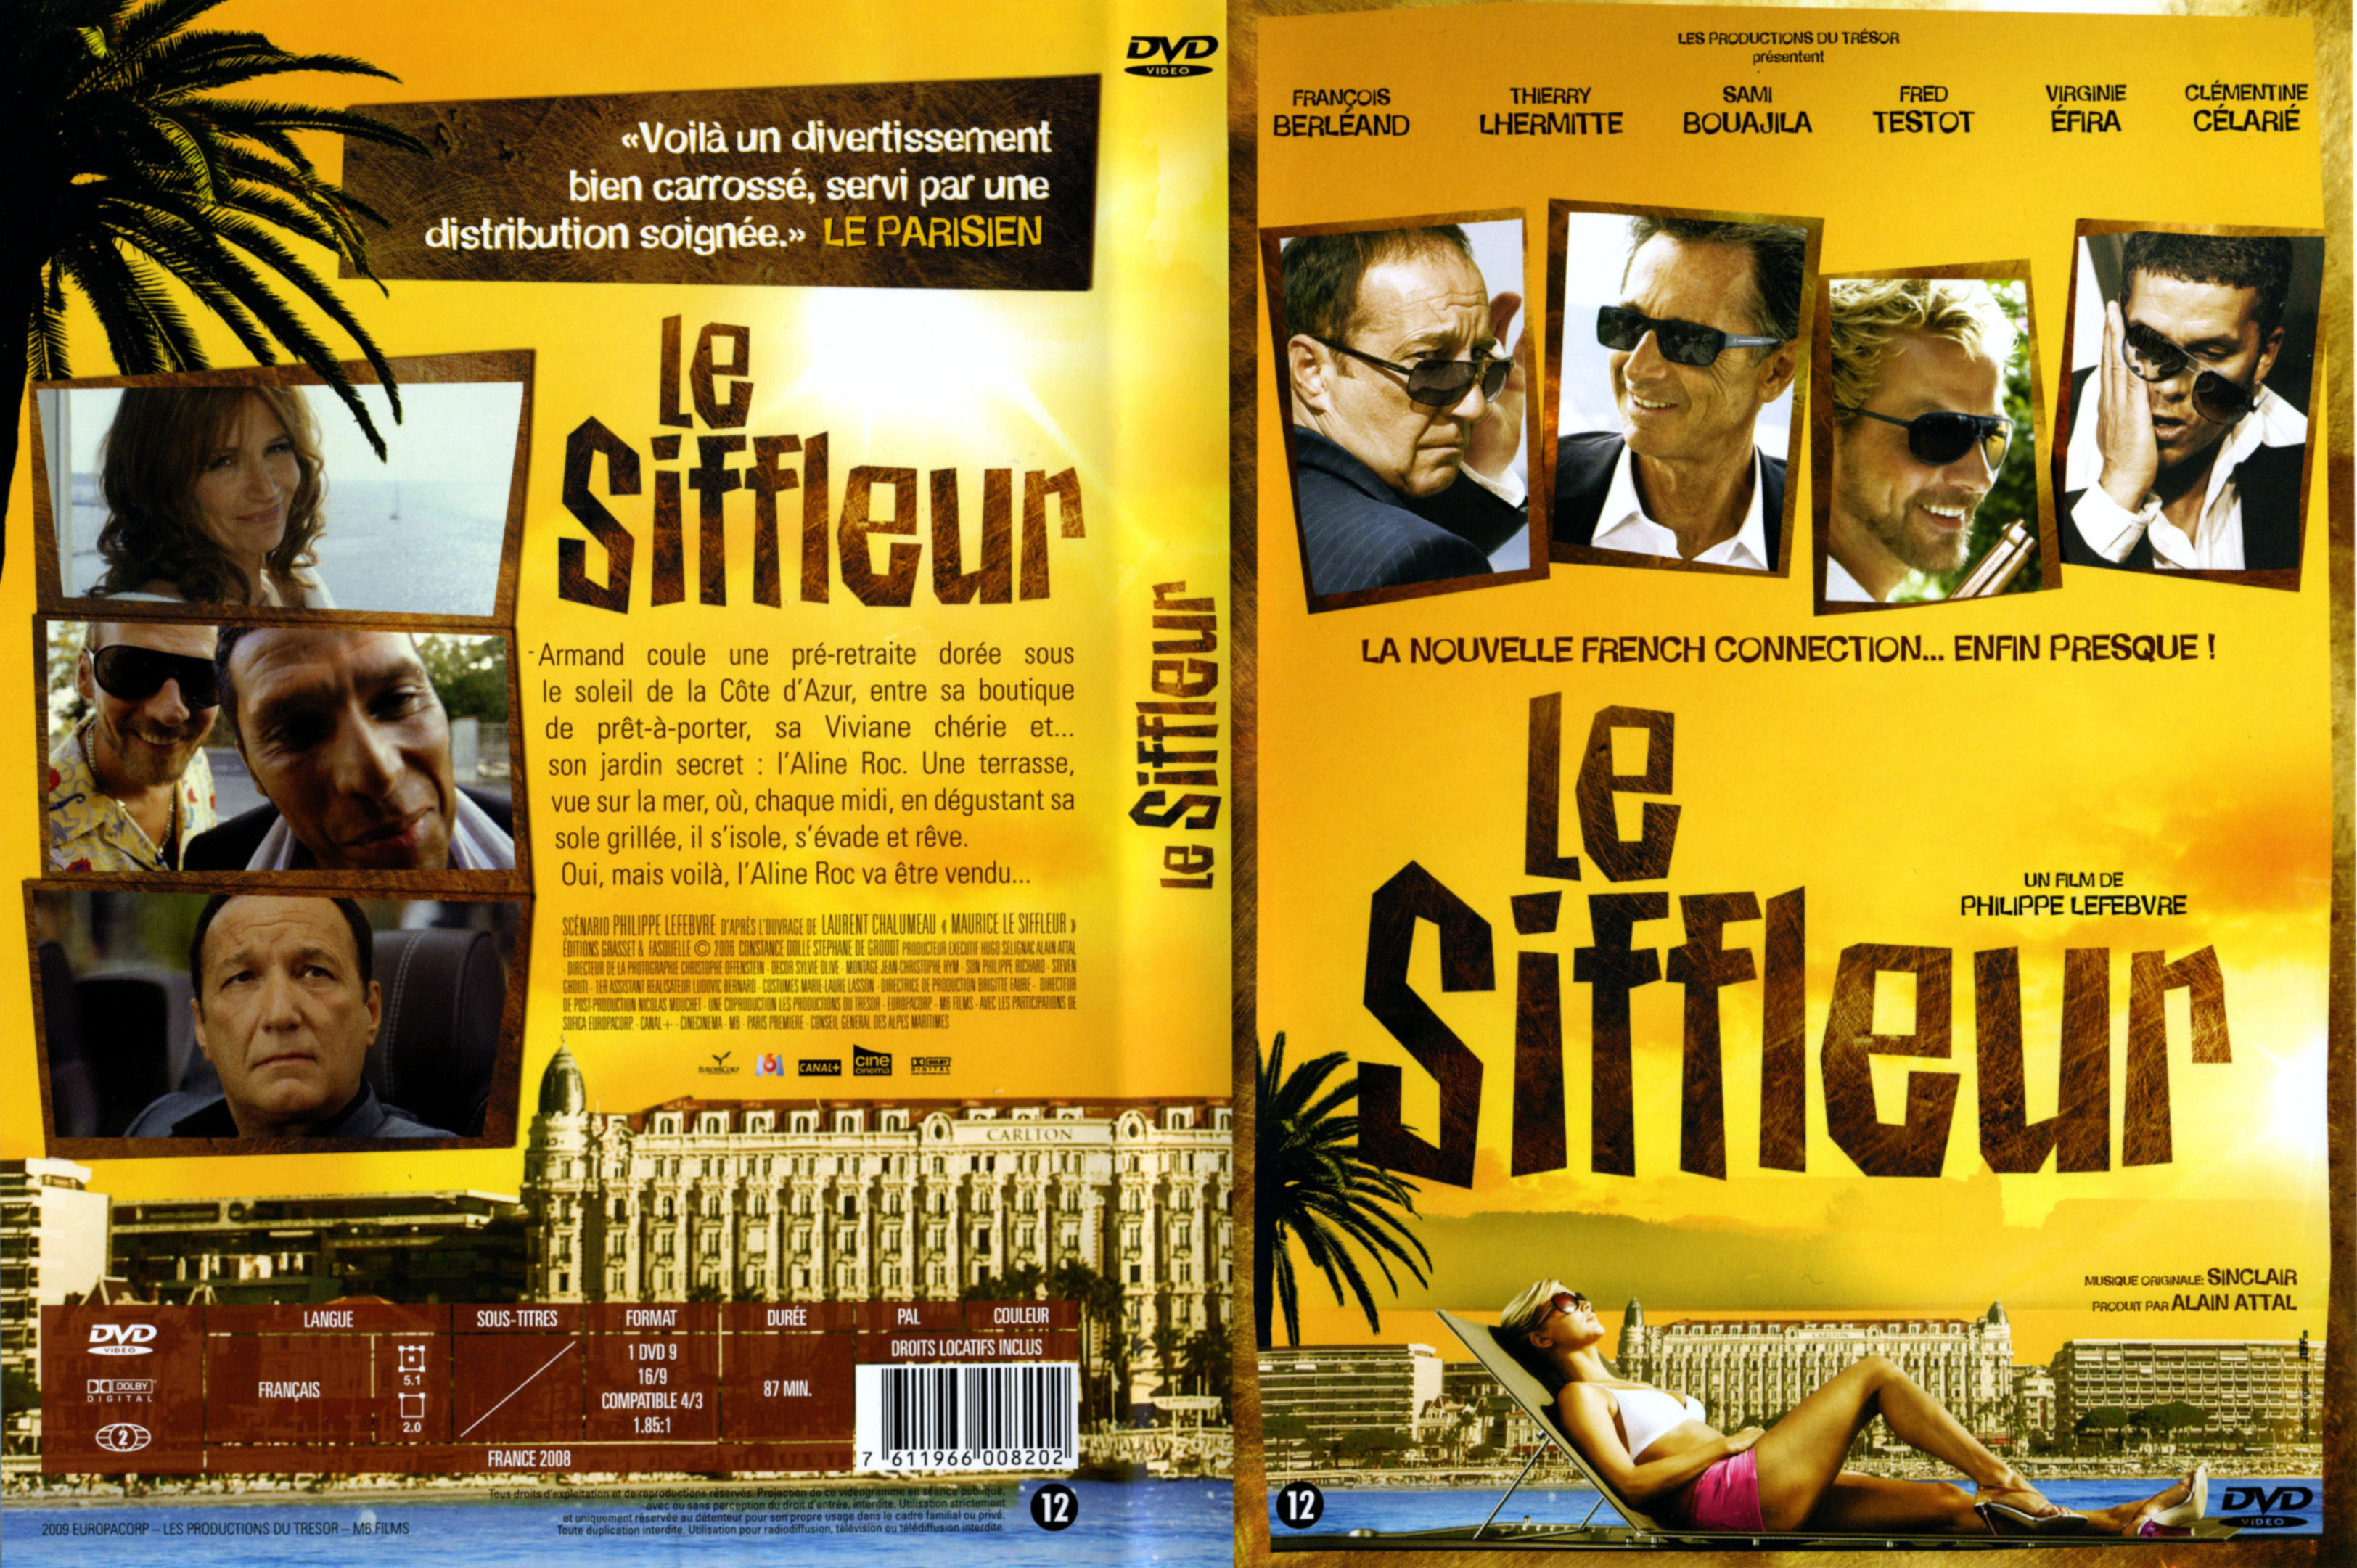 Jaquette DVD Le siffleur v2